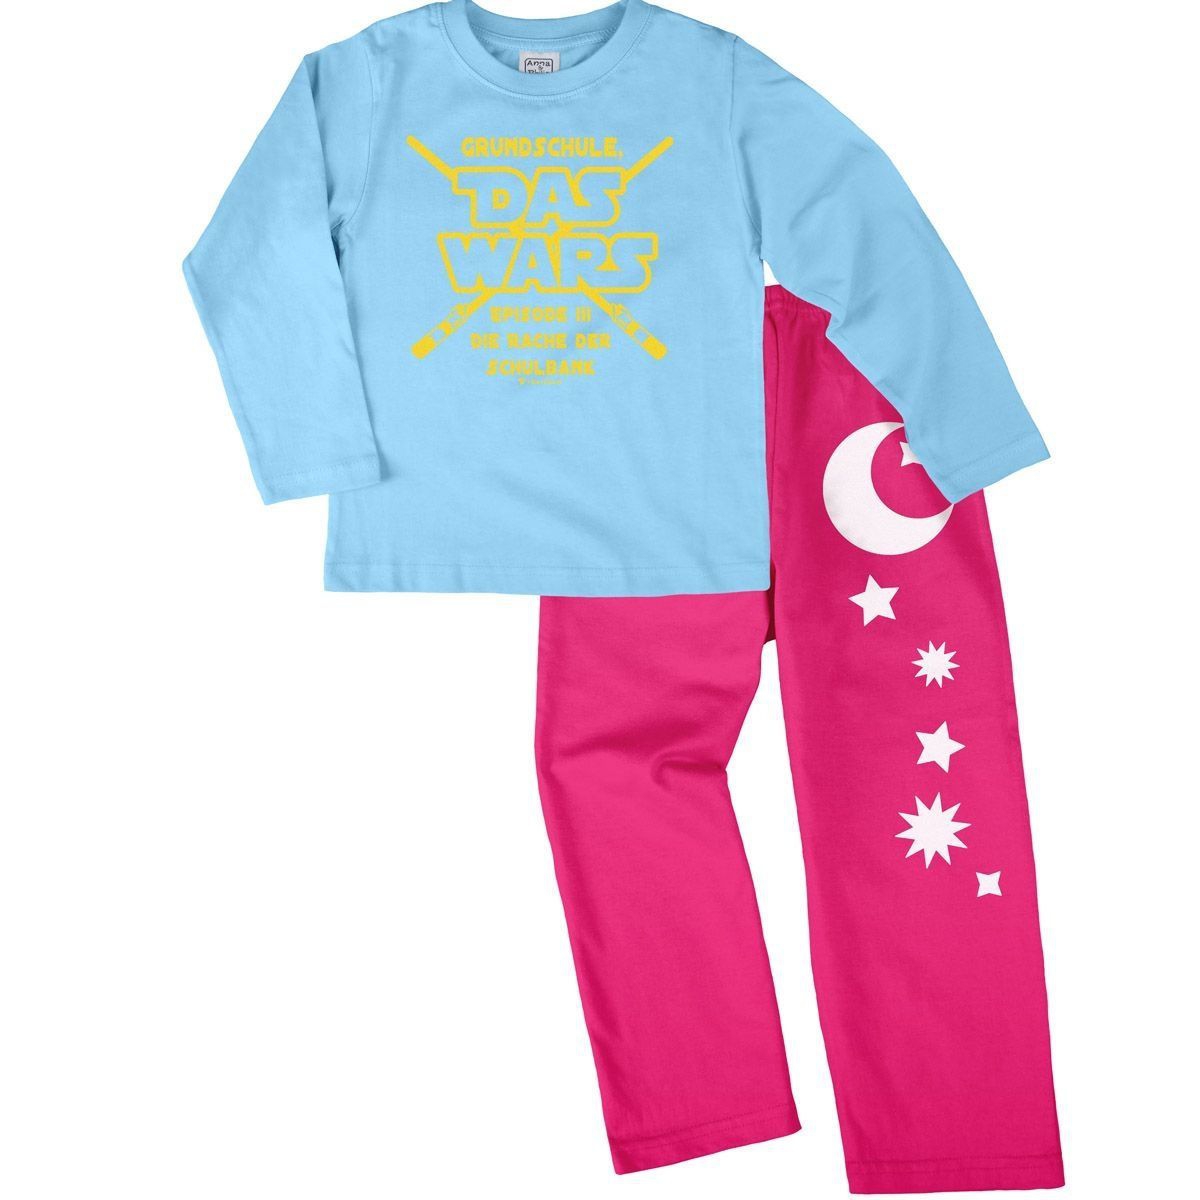 Das wars Grundschule Pyjama Set hellblau / pink 134 / 140